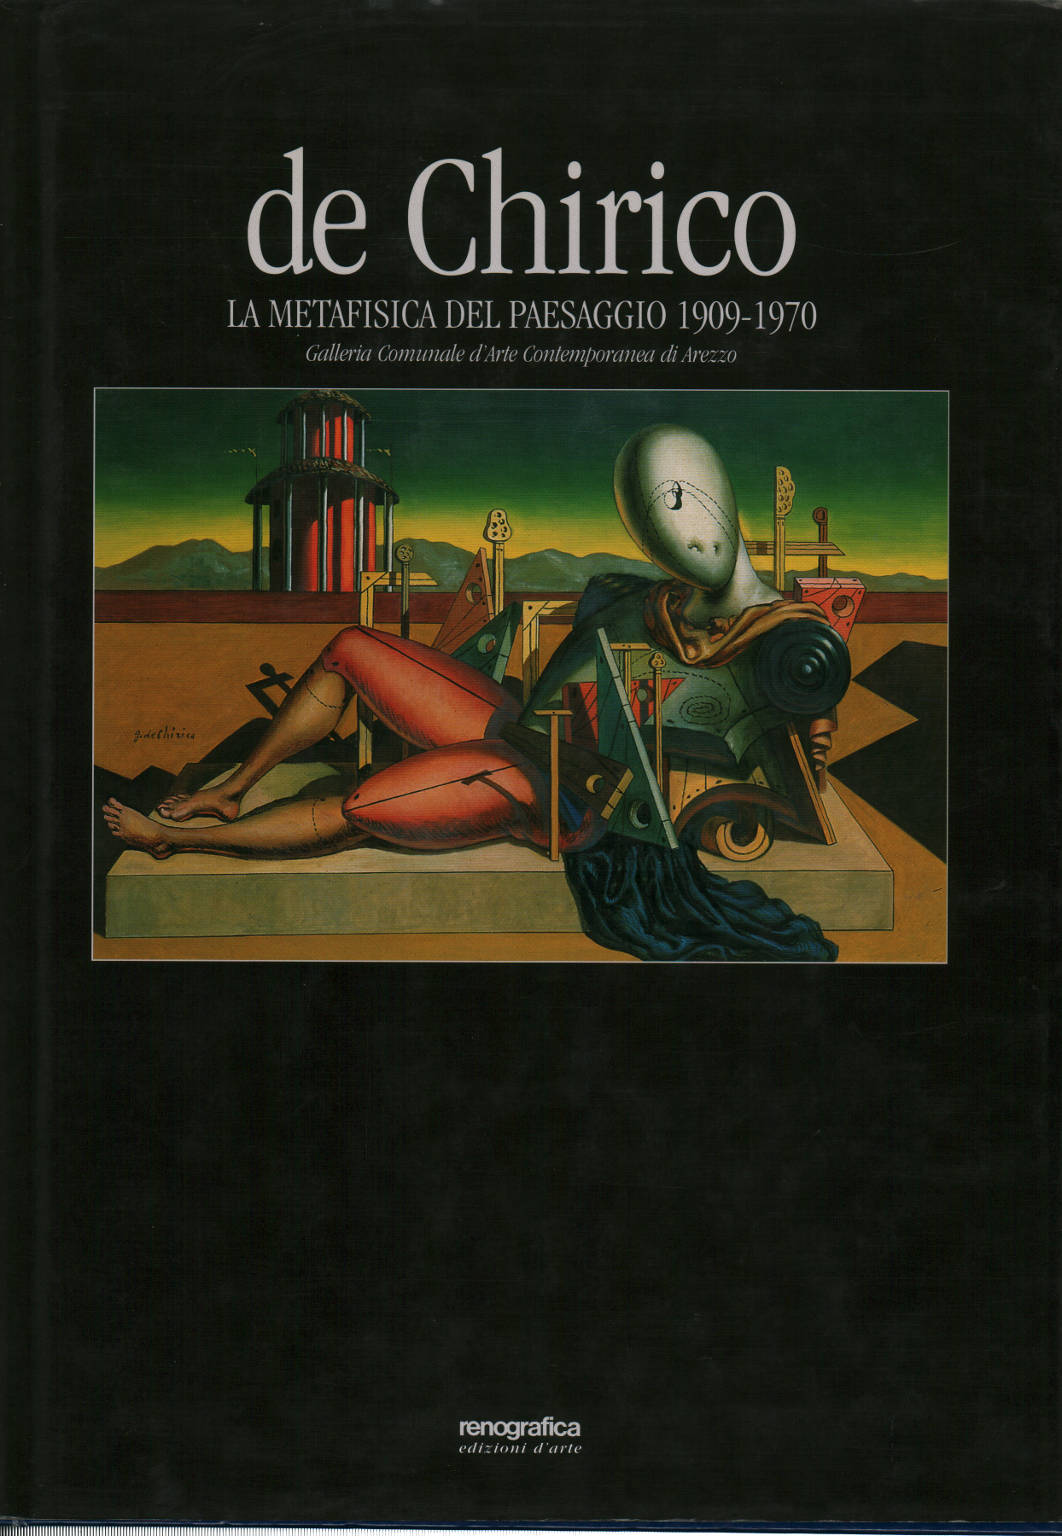 De Chirico: la metafisica del paesaggio 1909-1970, Maurizio Fagiolo Dell'Arco